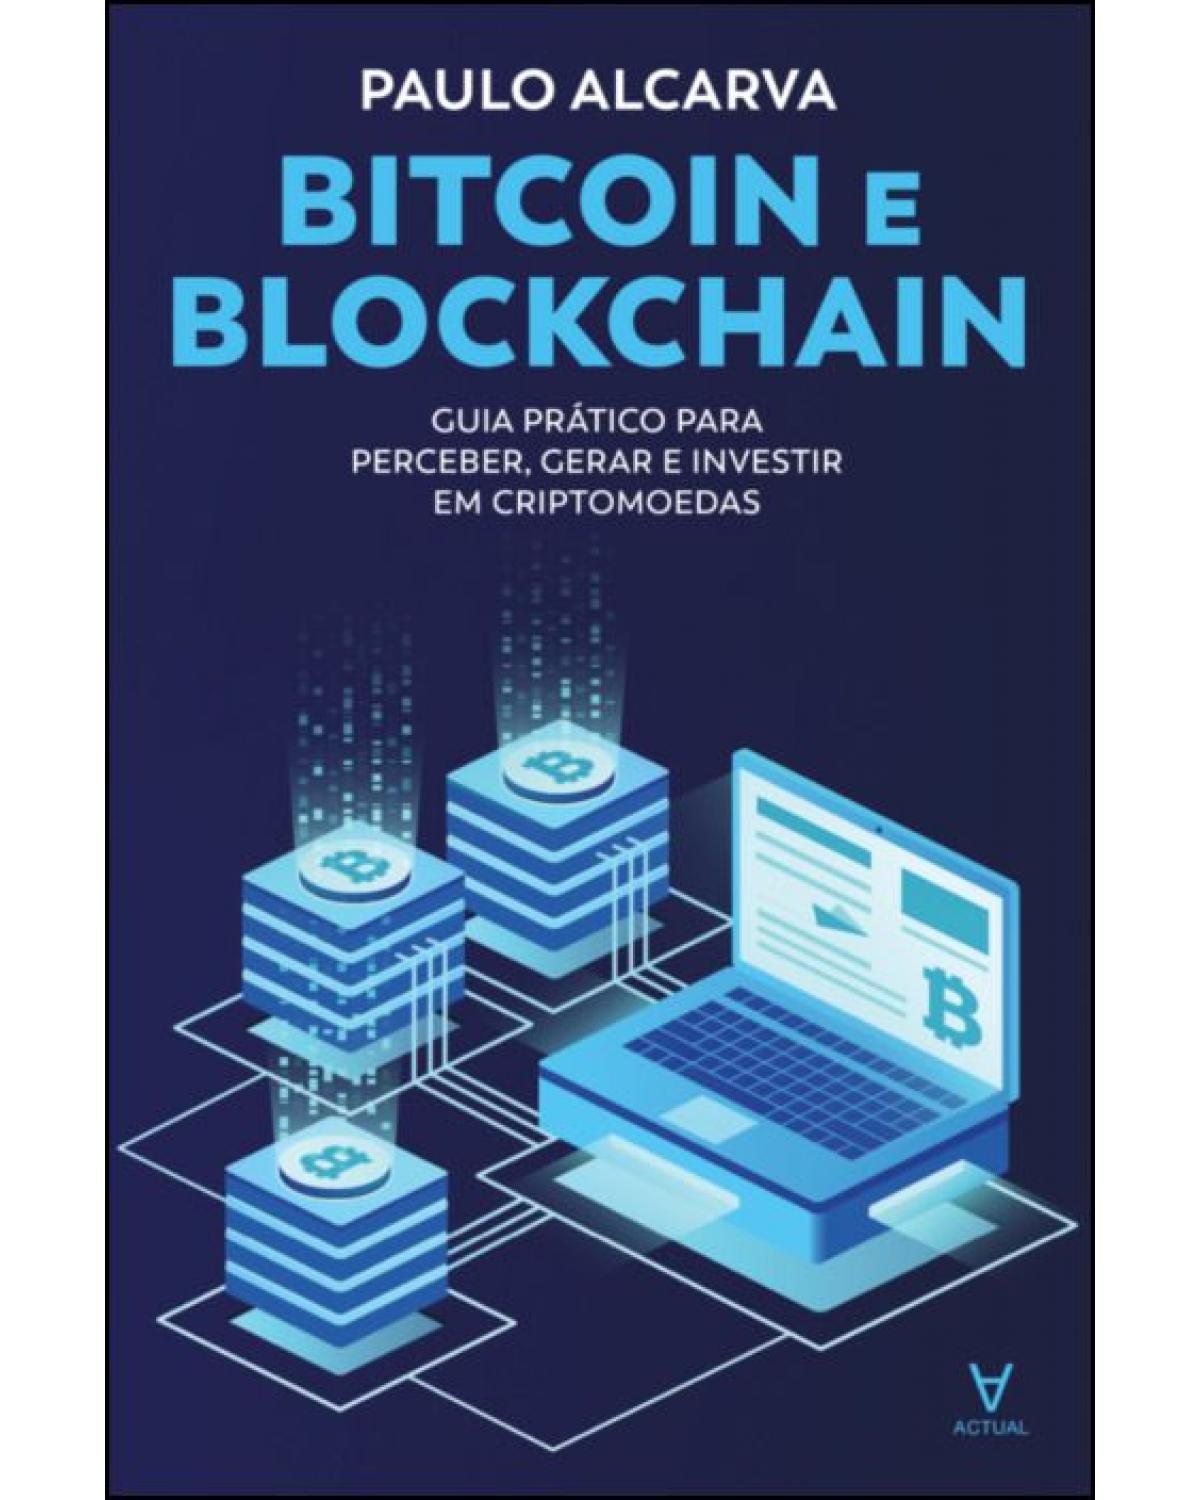 Bitcoin e blockchain - guia prático para perceber, gerar e investir em criptomoedas - 1ª Edição | 2021